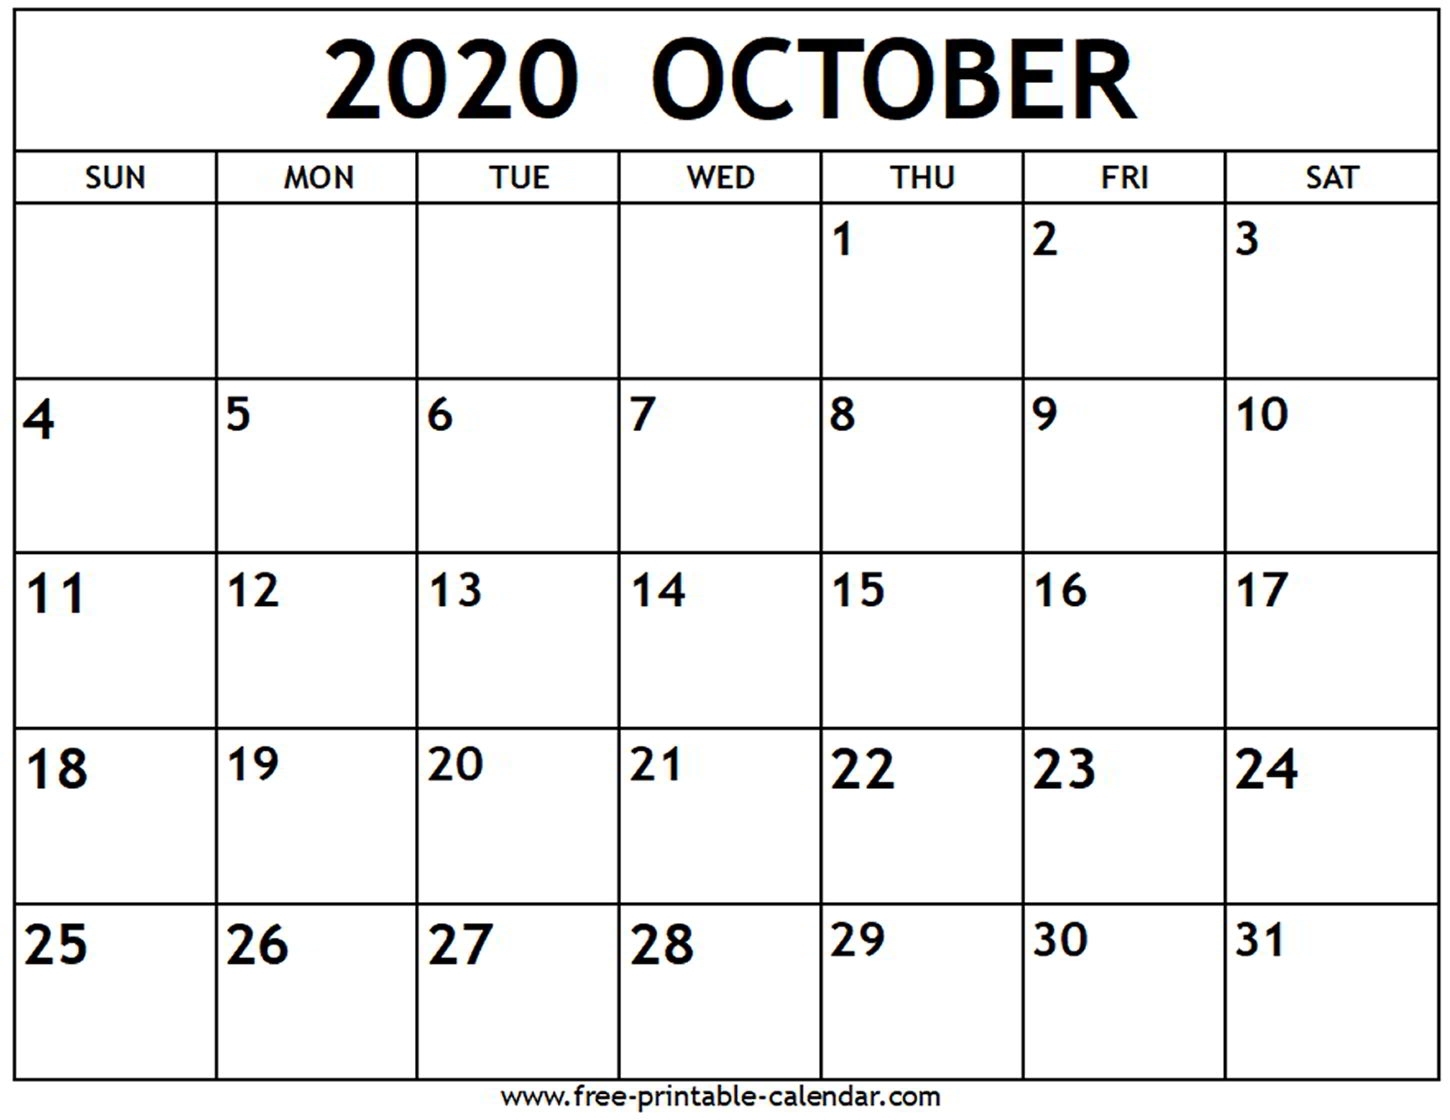 October 2020 Calendar - Free-Printable-Calendar